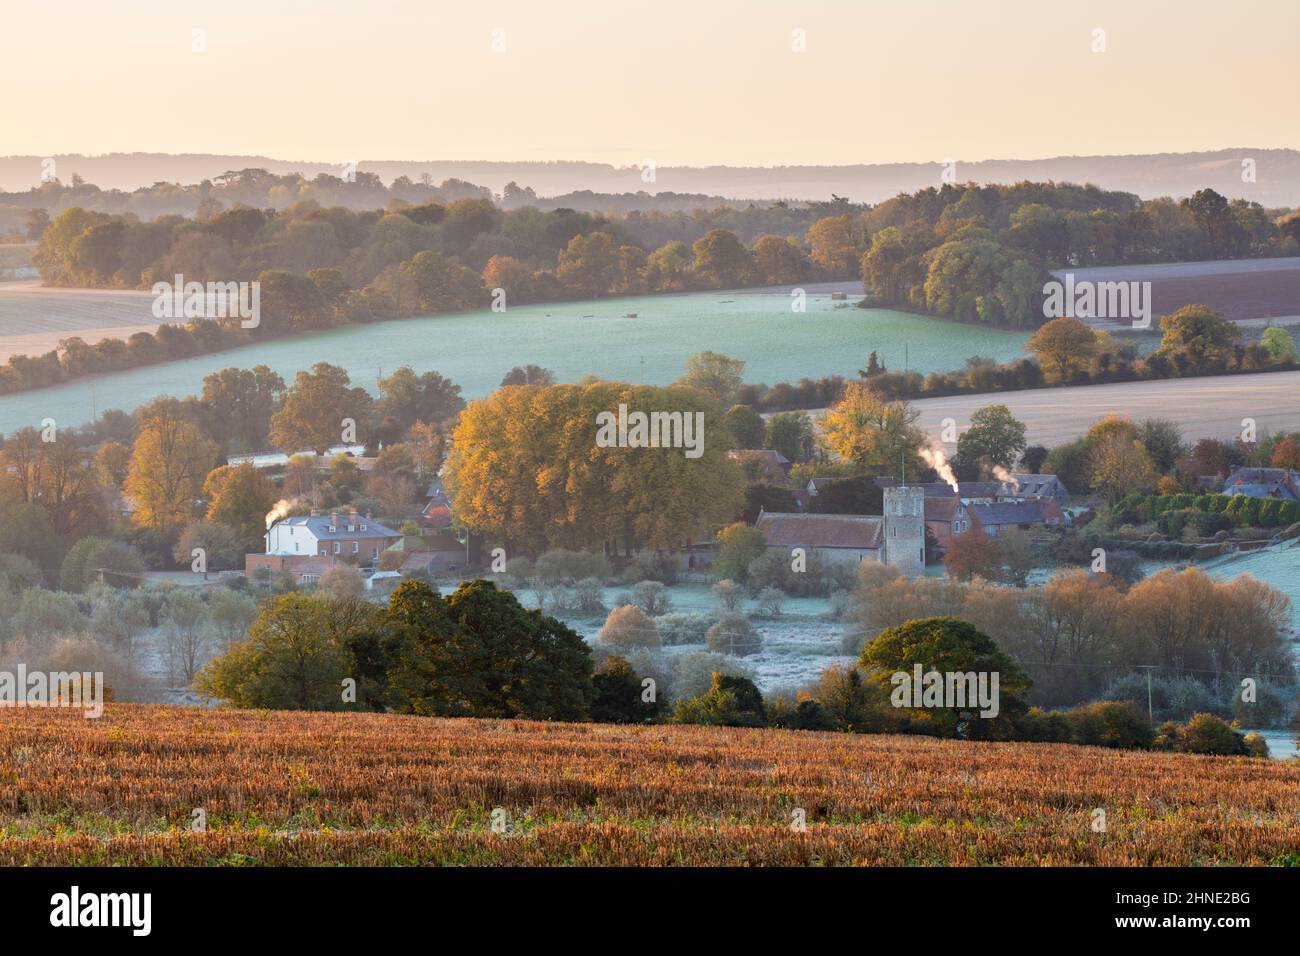 Lever de soleil en automne au-dessus du village de Great Shefford dans la vallée de Lambourn, Great Shefford, près de Newbury, Berkshire, Angleterre, Royaume-Uni, Europe Banque D'Images